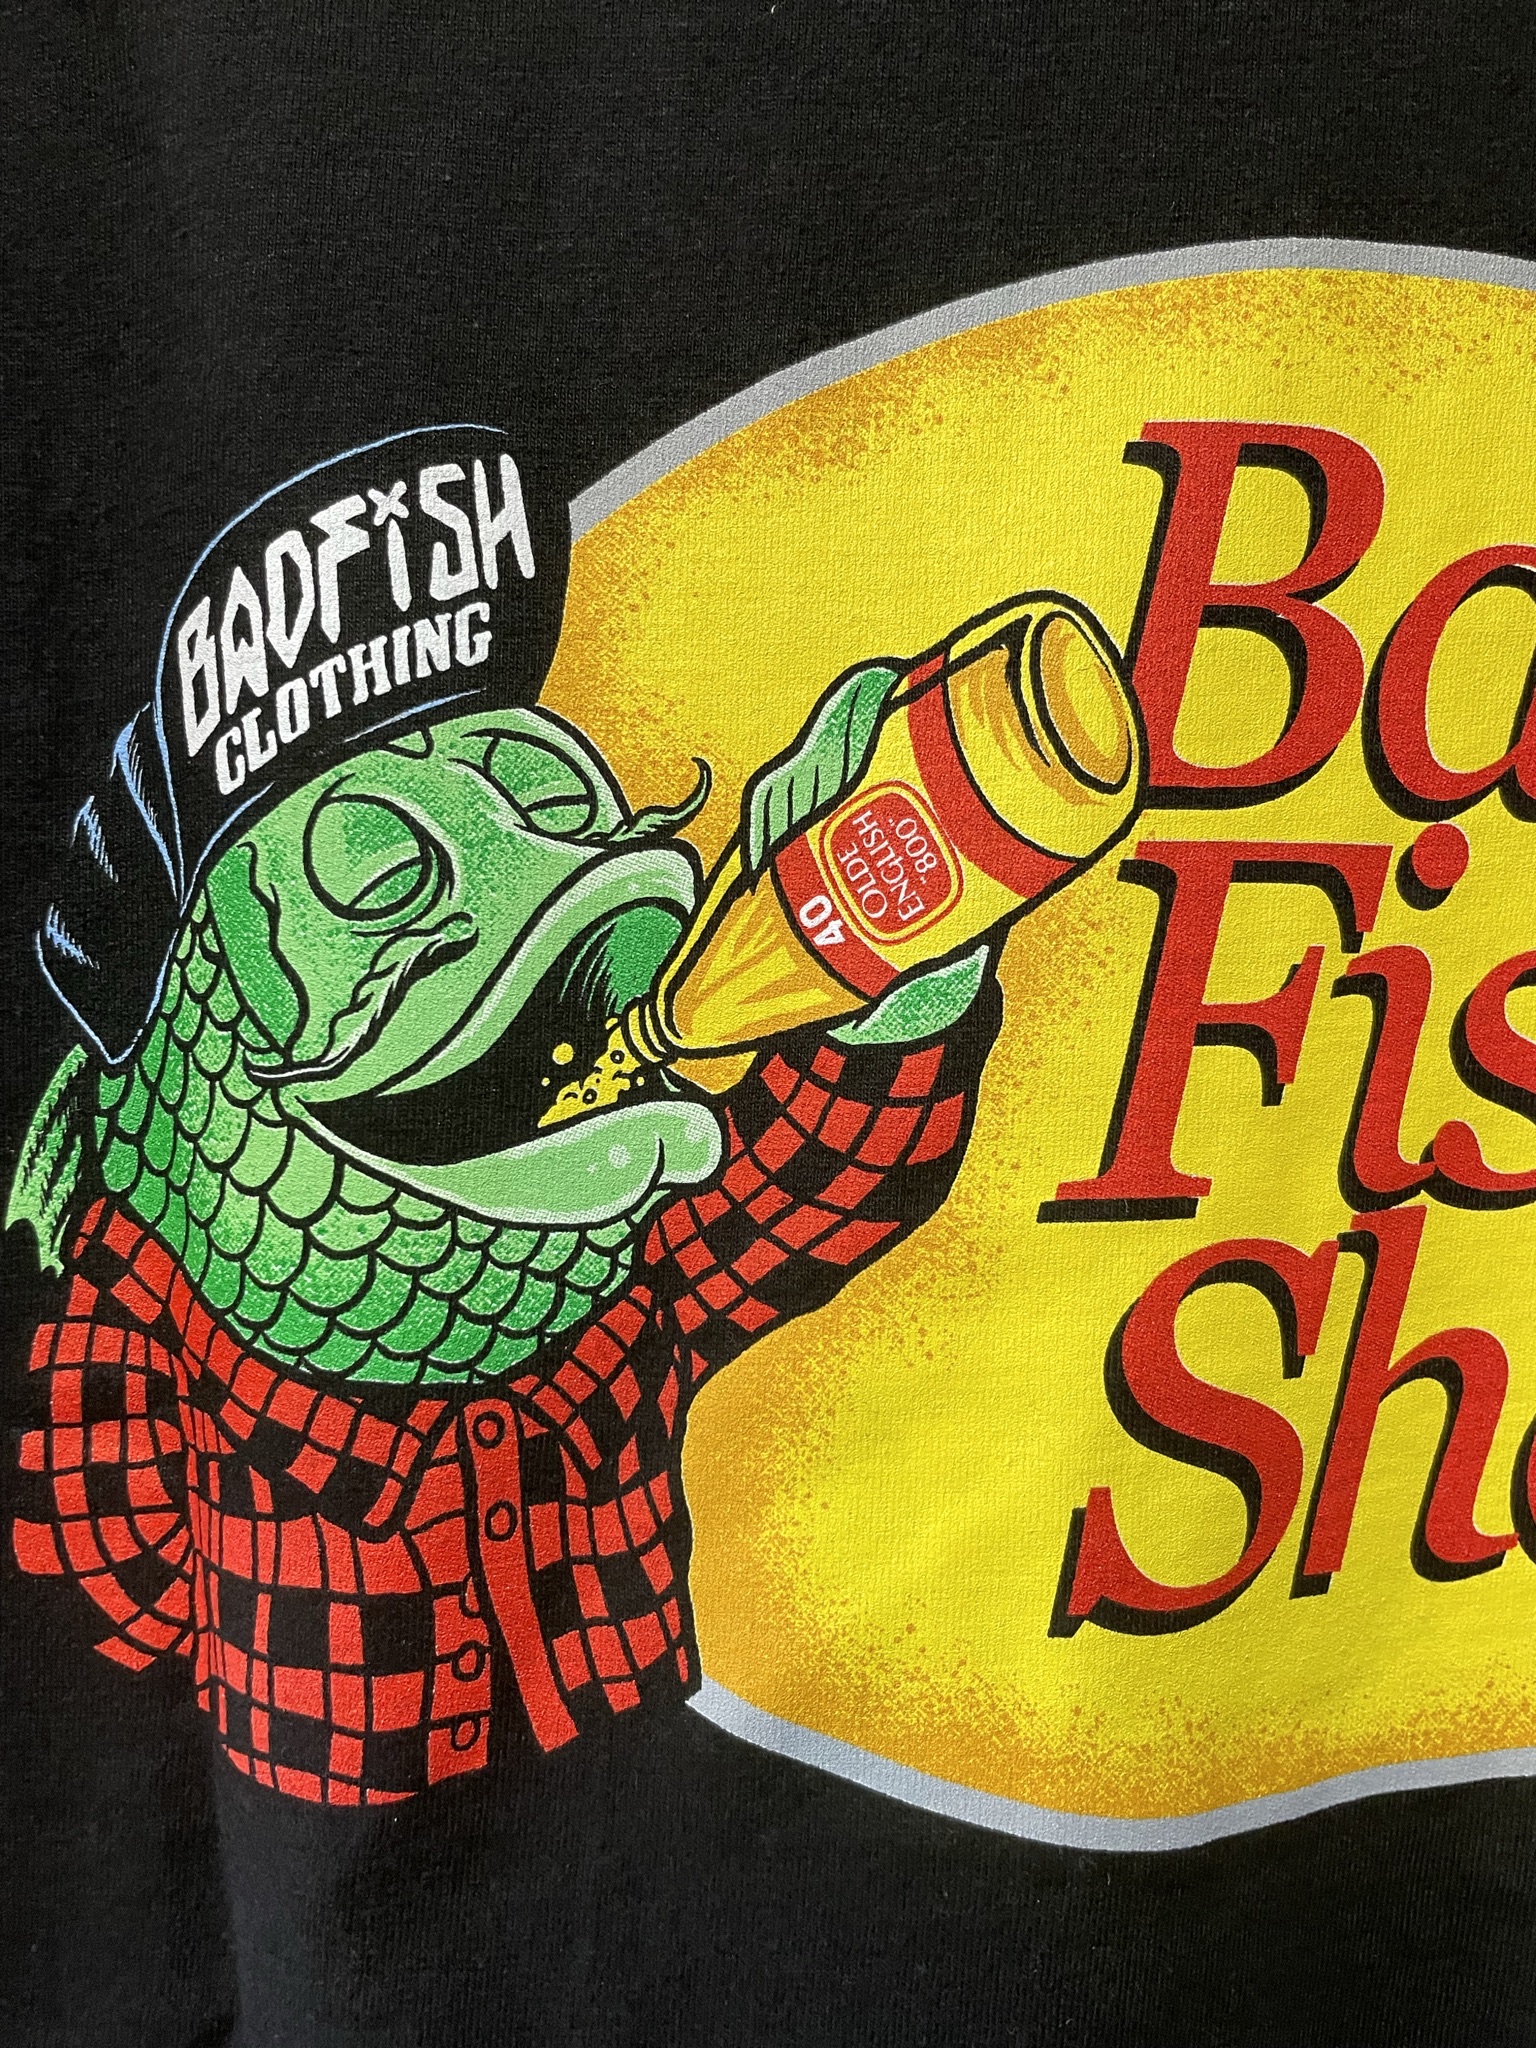 日本未入荷 Badfish clothing Tshirts basspro black インポートストリートブランド バッドフィッシュ